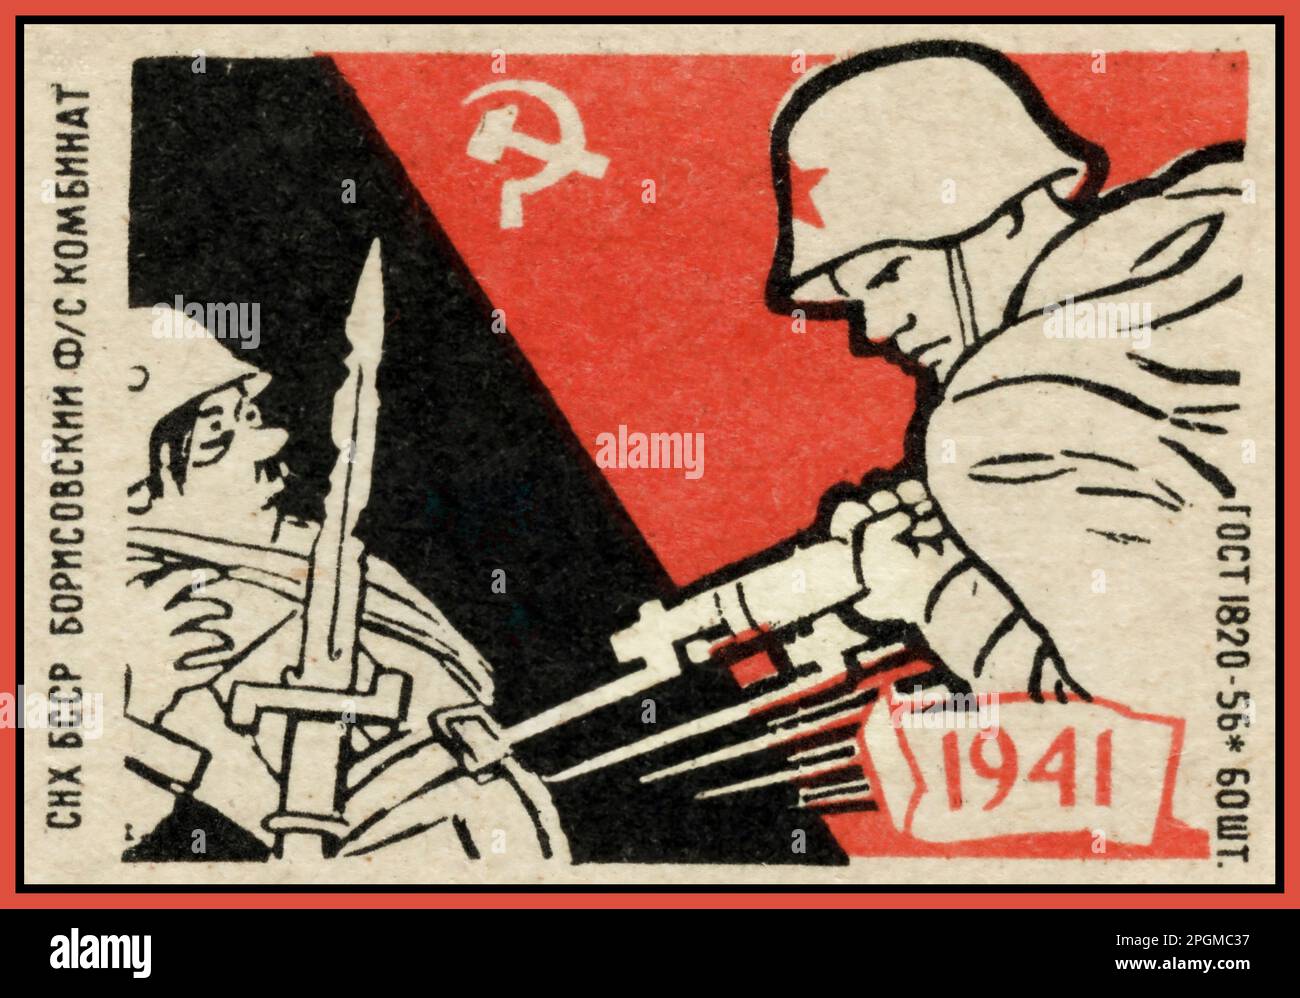 BARBAROSSA Soviet Russian URSS 1941 WW2 propagande affiche avec un soldat soviétique bayoneting un dessin animé dirigeant du Parti nazi Fuhrer Adolf Hitler. 1941 le début de l'opération Barbarossa sur le front oriental de l'Allemagne nazie. Deuxième Guerre mondiale deuxième Guerre mondiale Banque D'Images